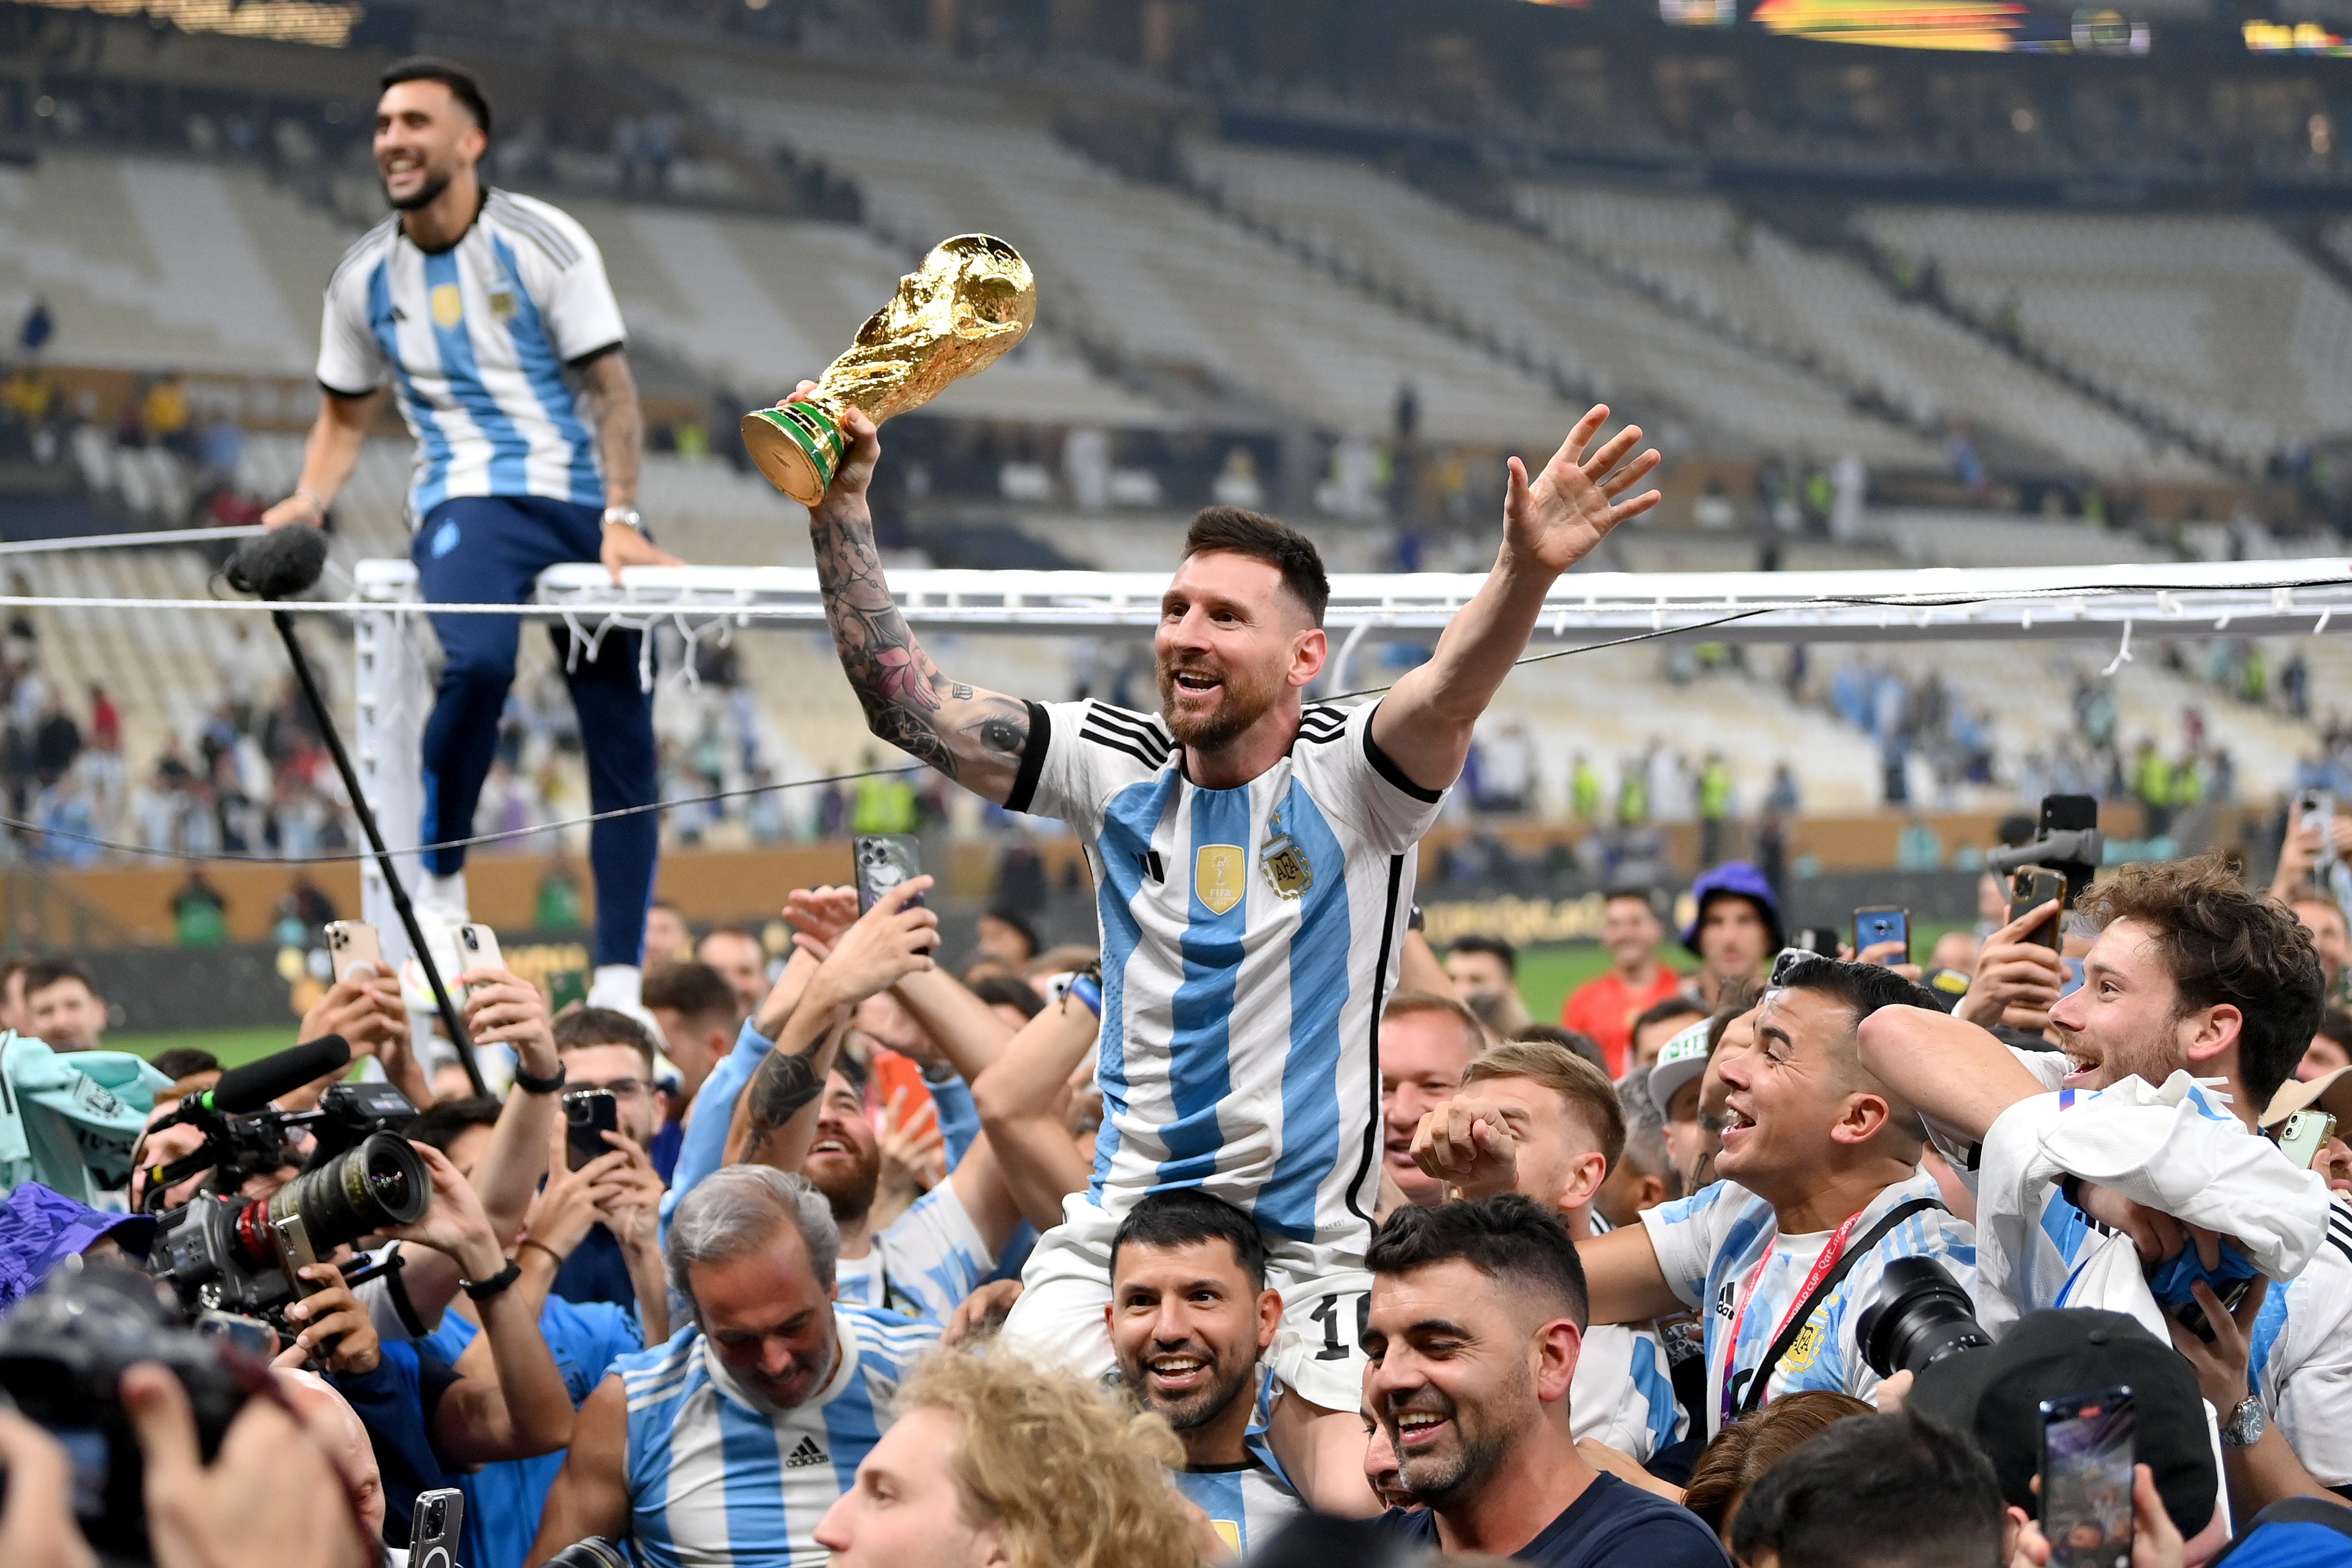 Messi, người kế thừa của huyền thoại Maradona, đã khiến người hâm mộ phấn khích với màn ăn mừng ấn tượng sau khi ghi bàn thắng quan trọng. Cùng xem hình ảnh hai huyền thoại bóng đá này bên nhau và tưởng nhớ những kỷ niệm đáng nhớ.